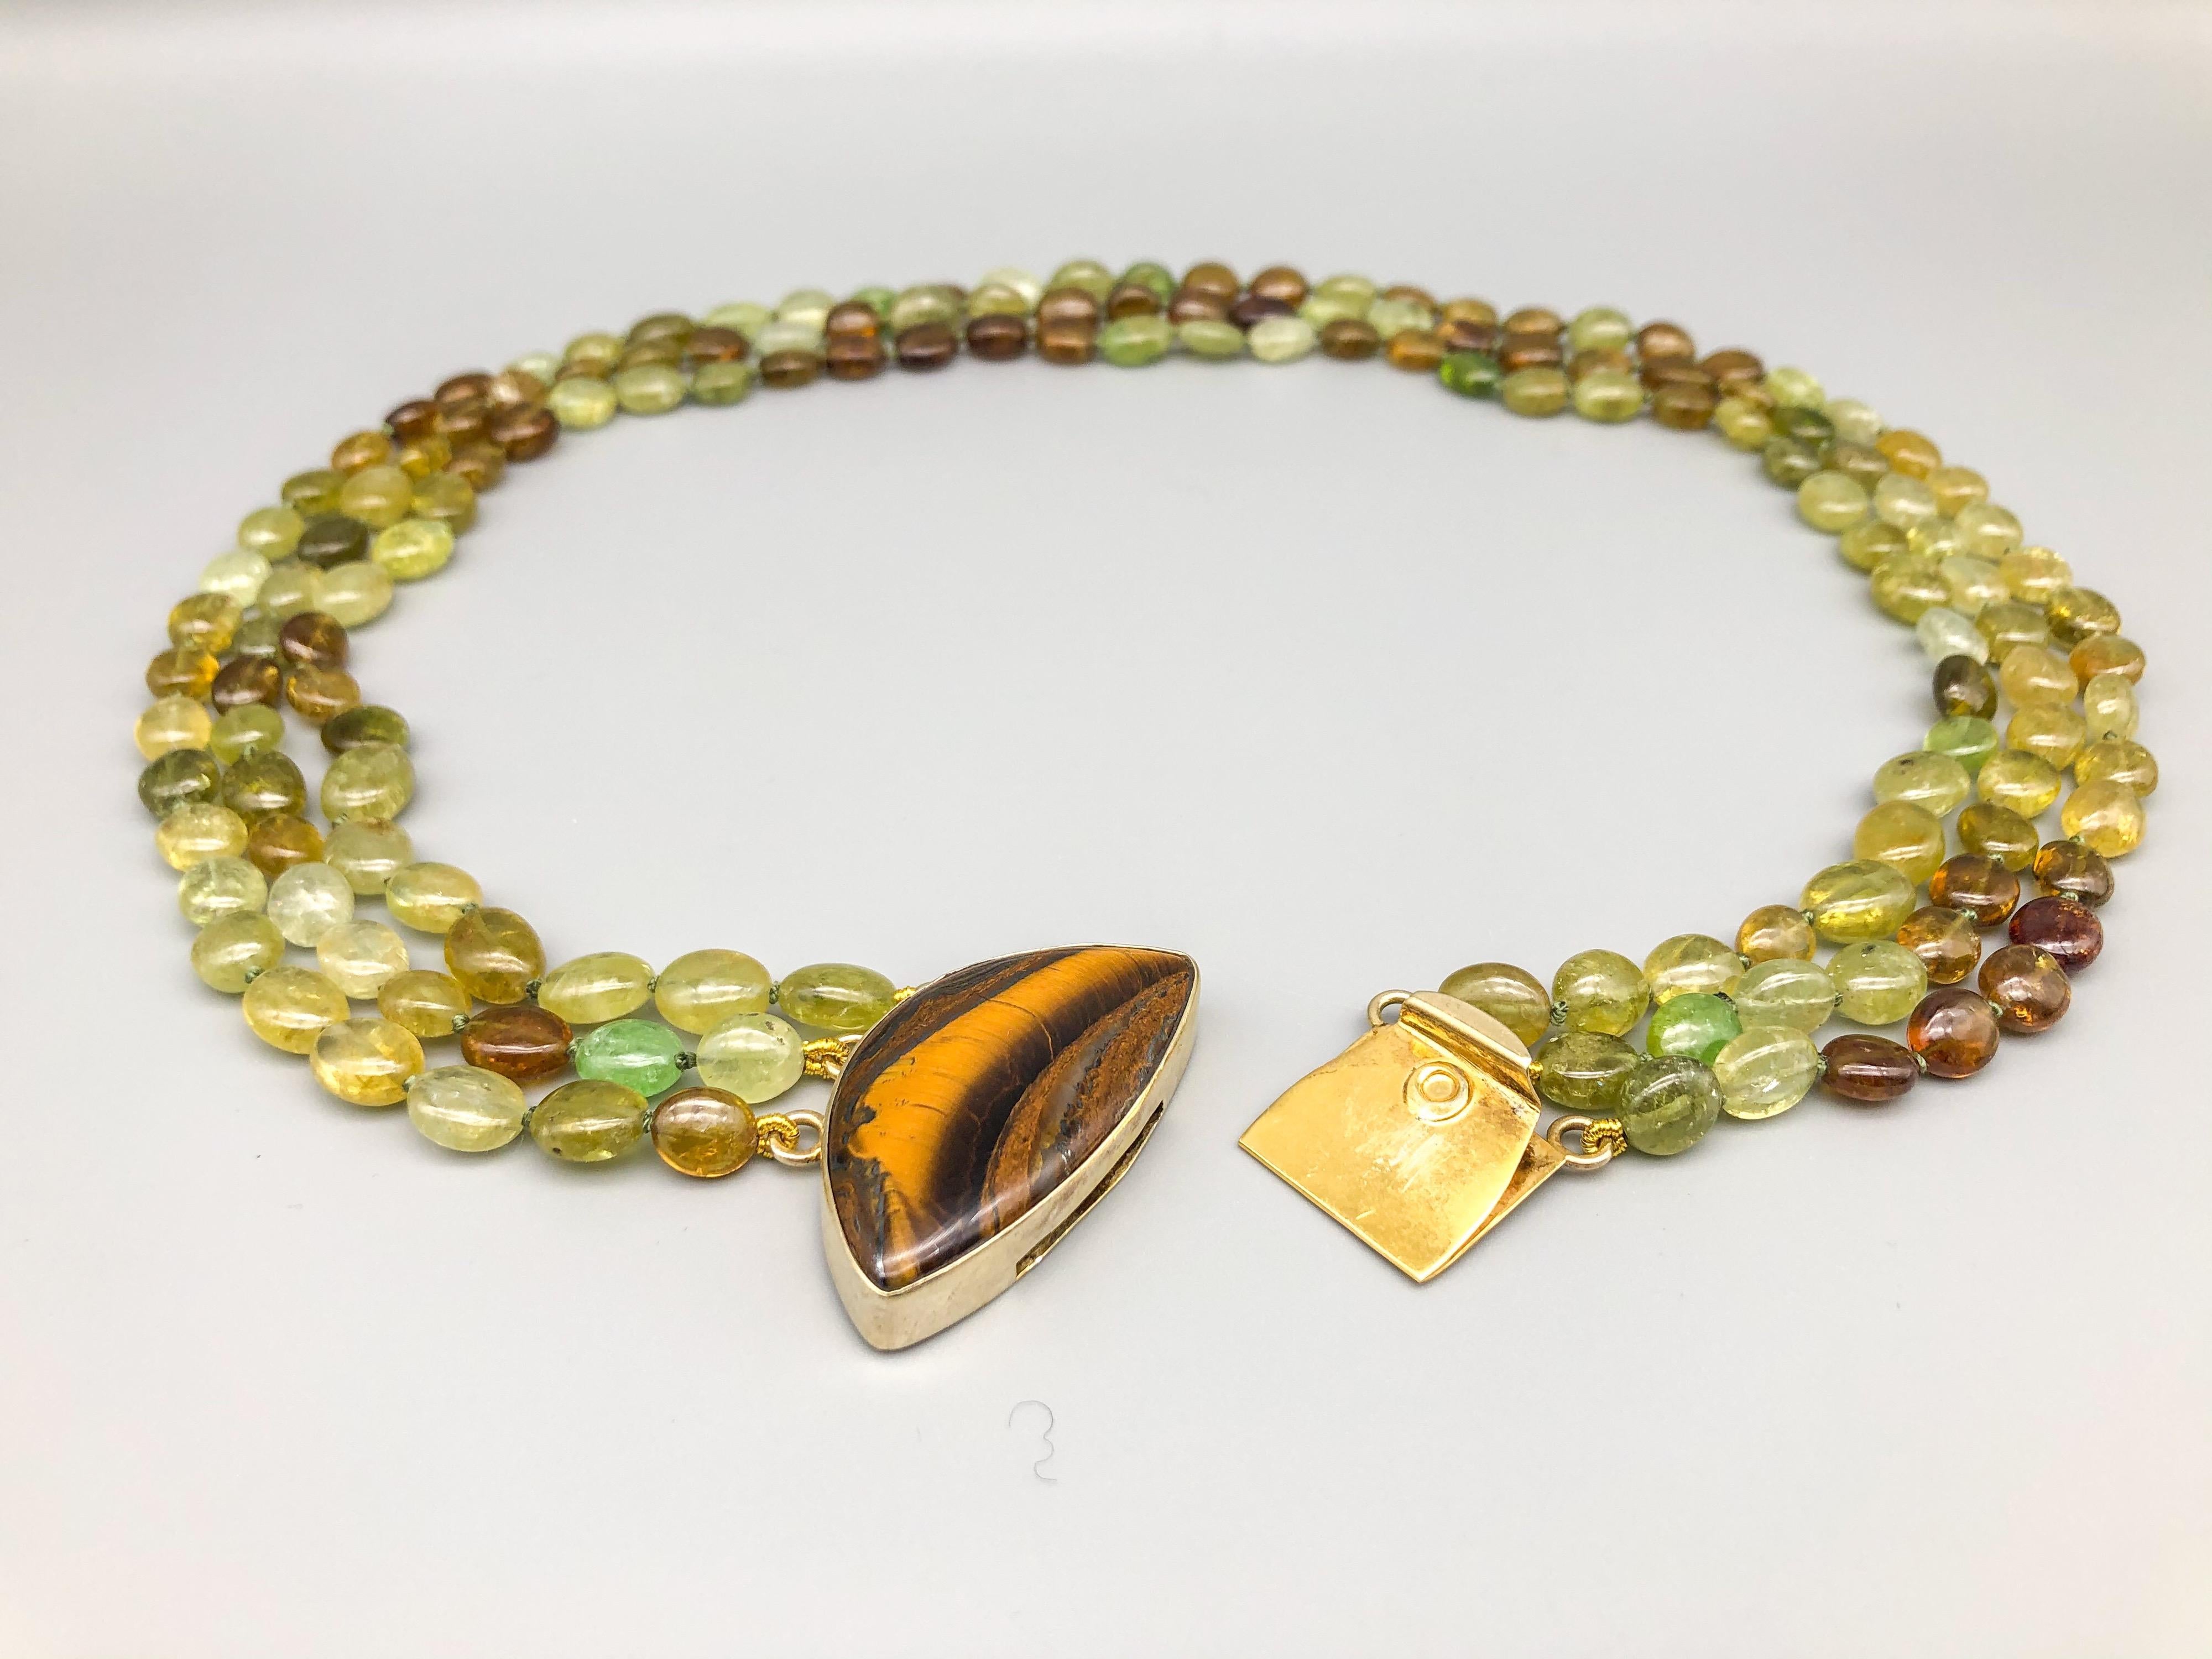 A.Jeschel 3 Strand Green Garnet necklace  (Grossularite) 5